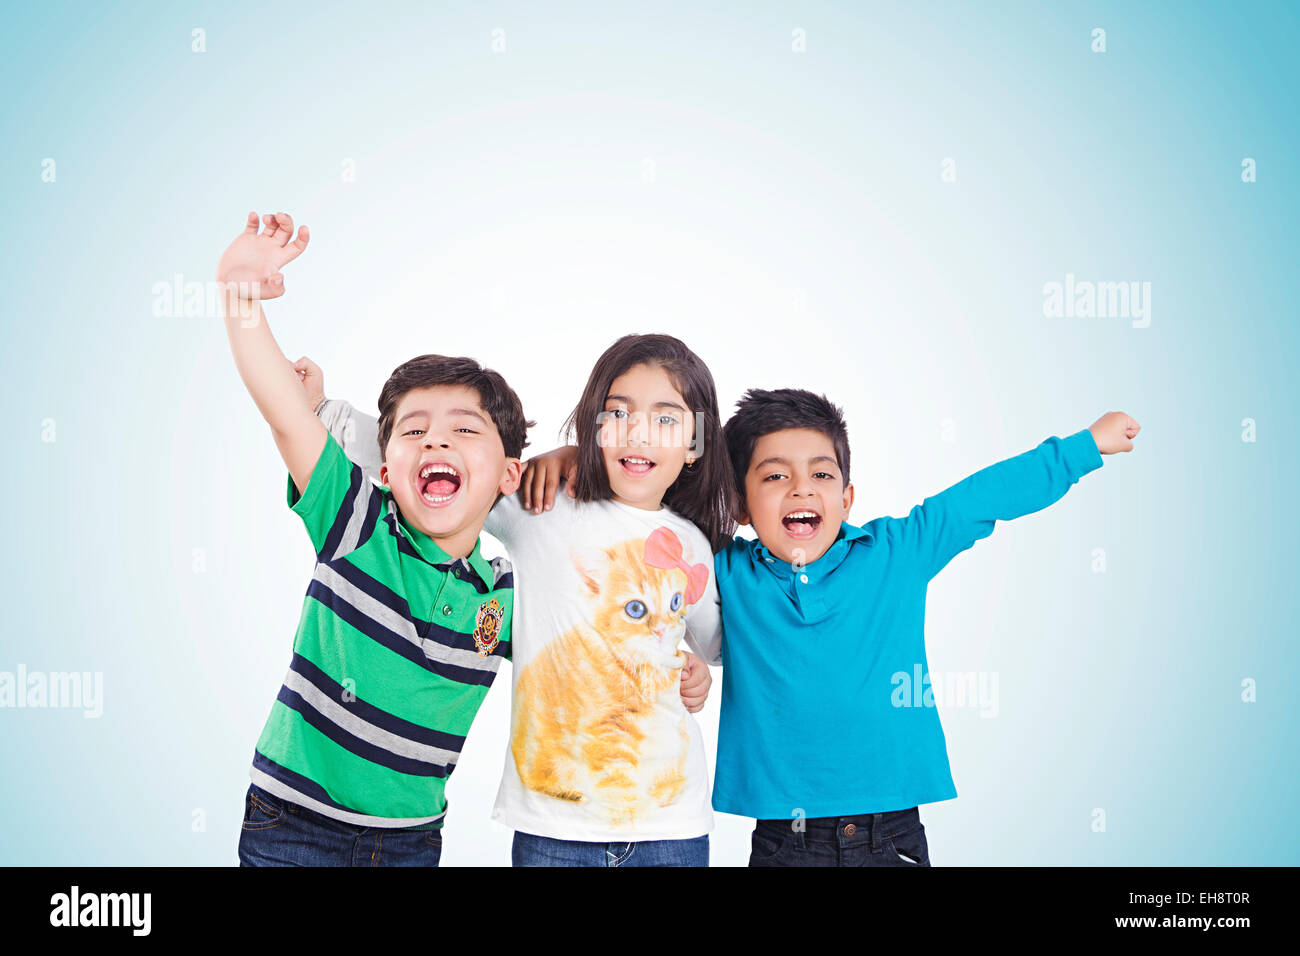 3 indian kids Friends shouting fun Stock Photo